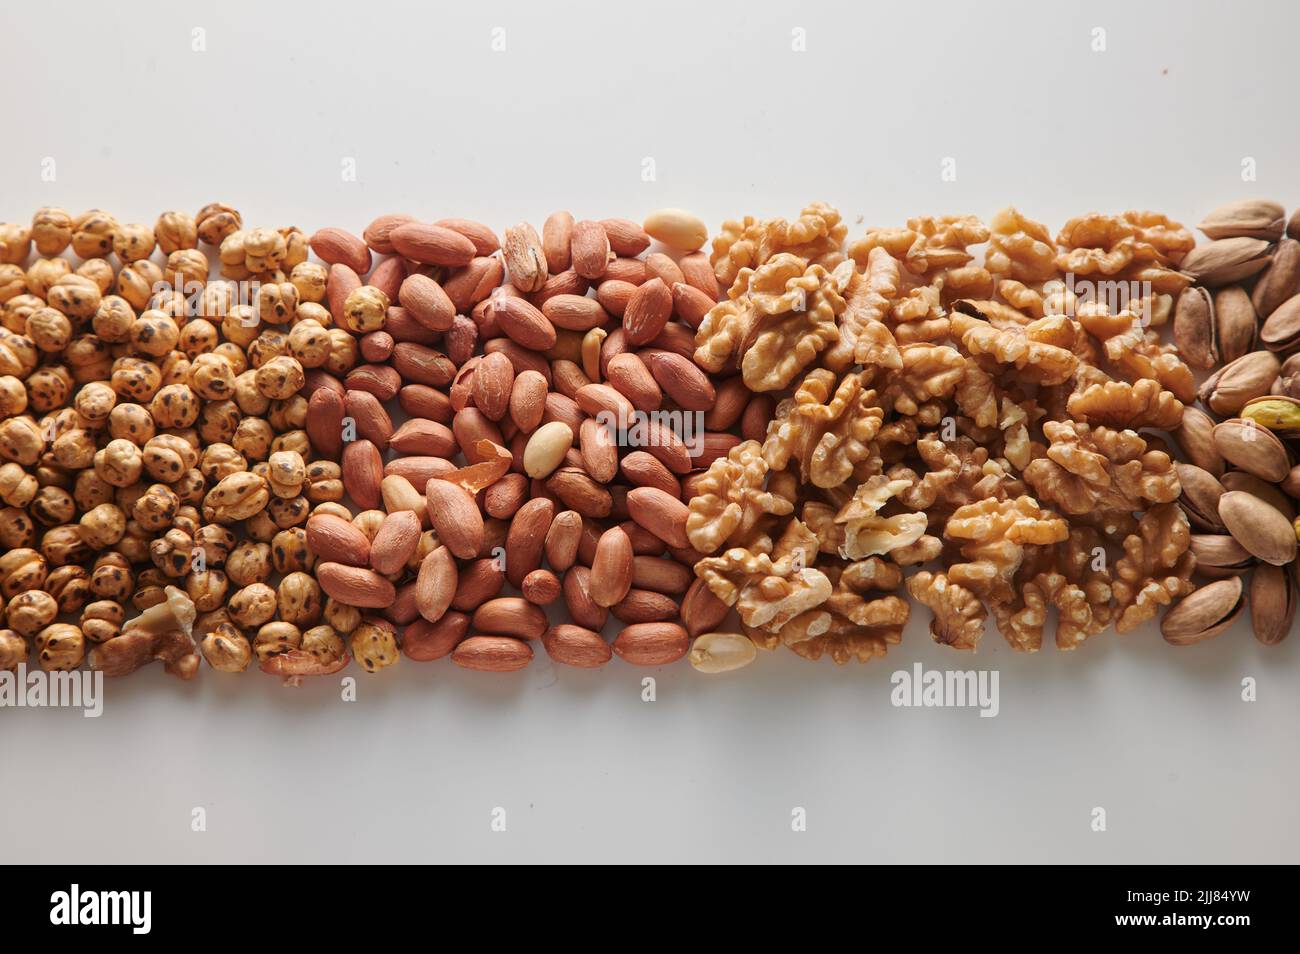 Vista superior montón de avellanas con cacahuetes sin pelar colocados sobre fondo blanco claro con nueces y pistachos en estudio luminoso Foto de stock